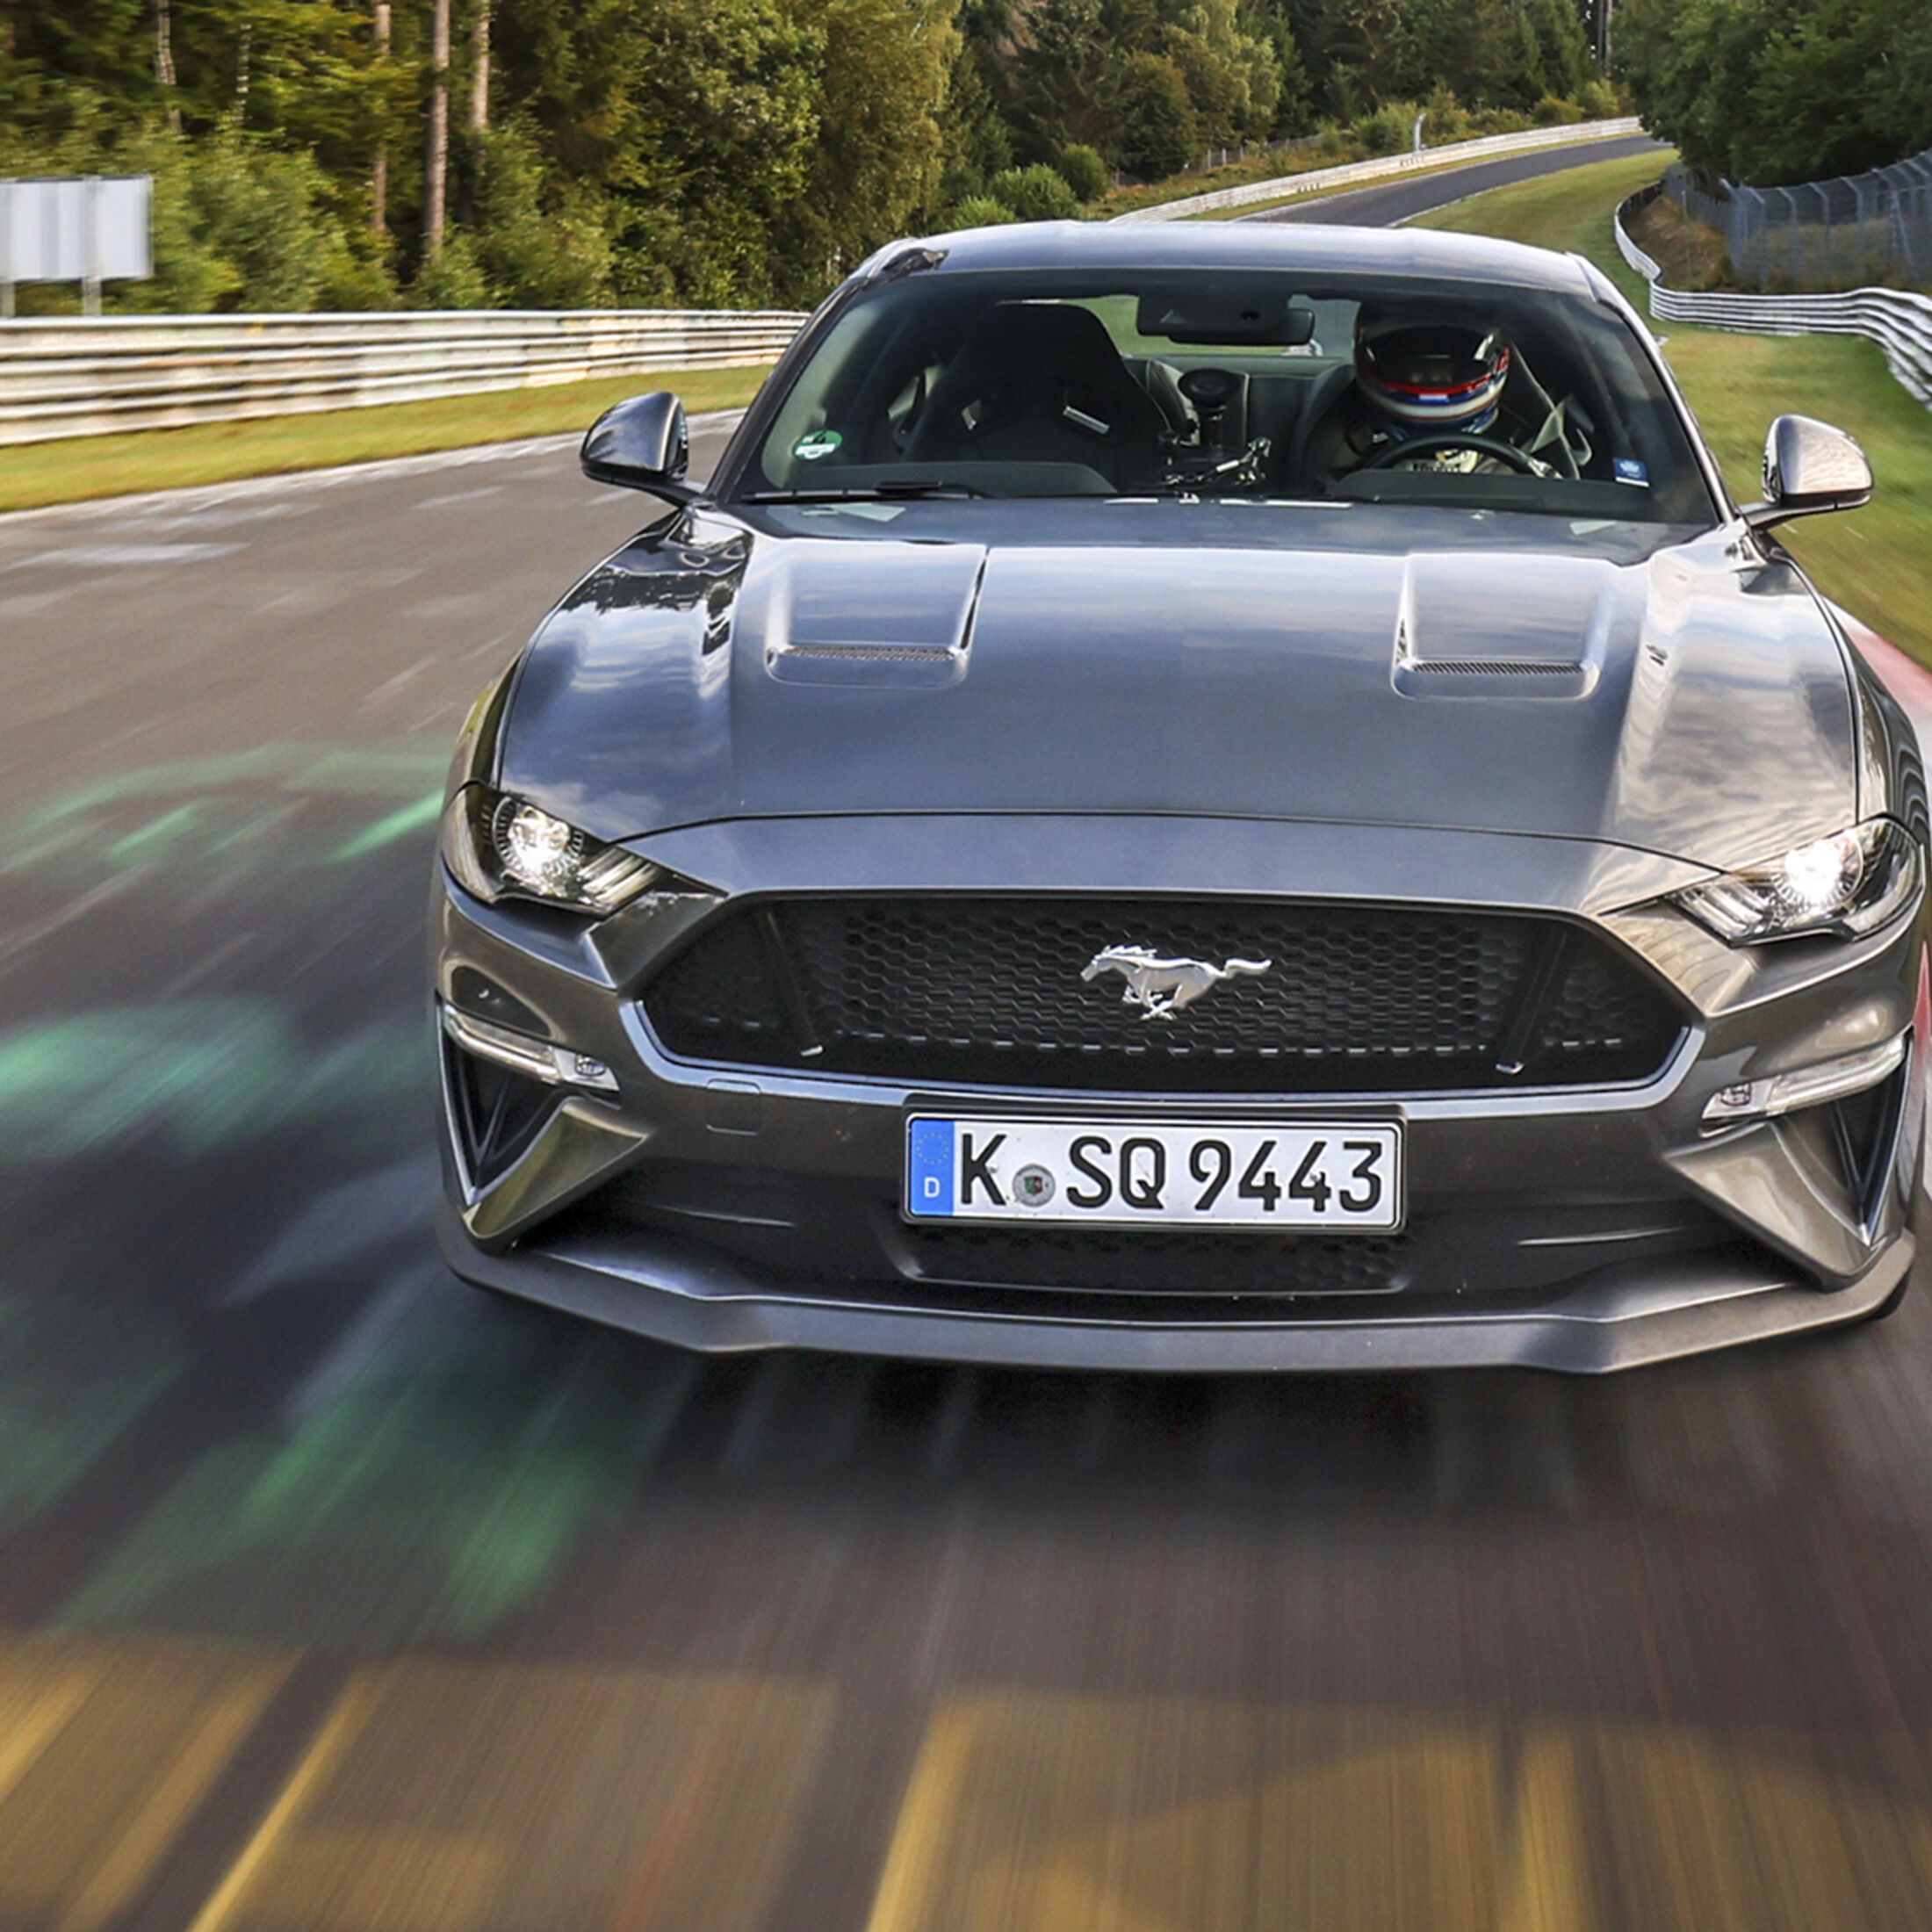 https://imgr1.auto-motor-und-sport.de/Ford-Mustang-GT-Exterieur-jsonLd1x1-ac3af26e-1730838.jpg